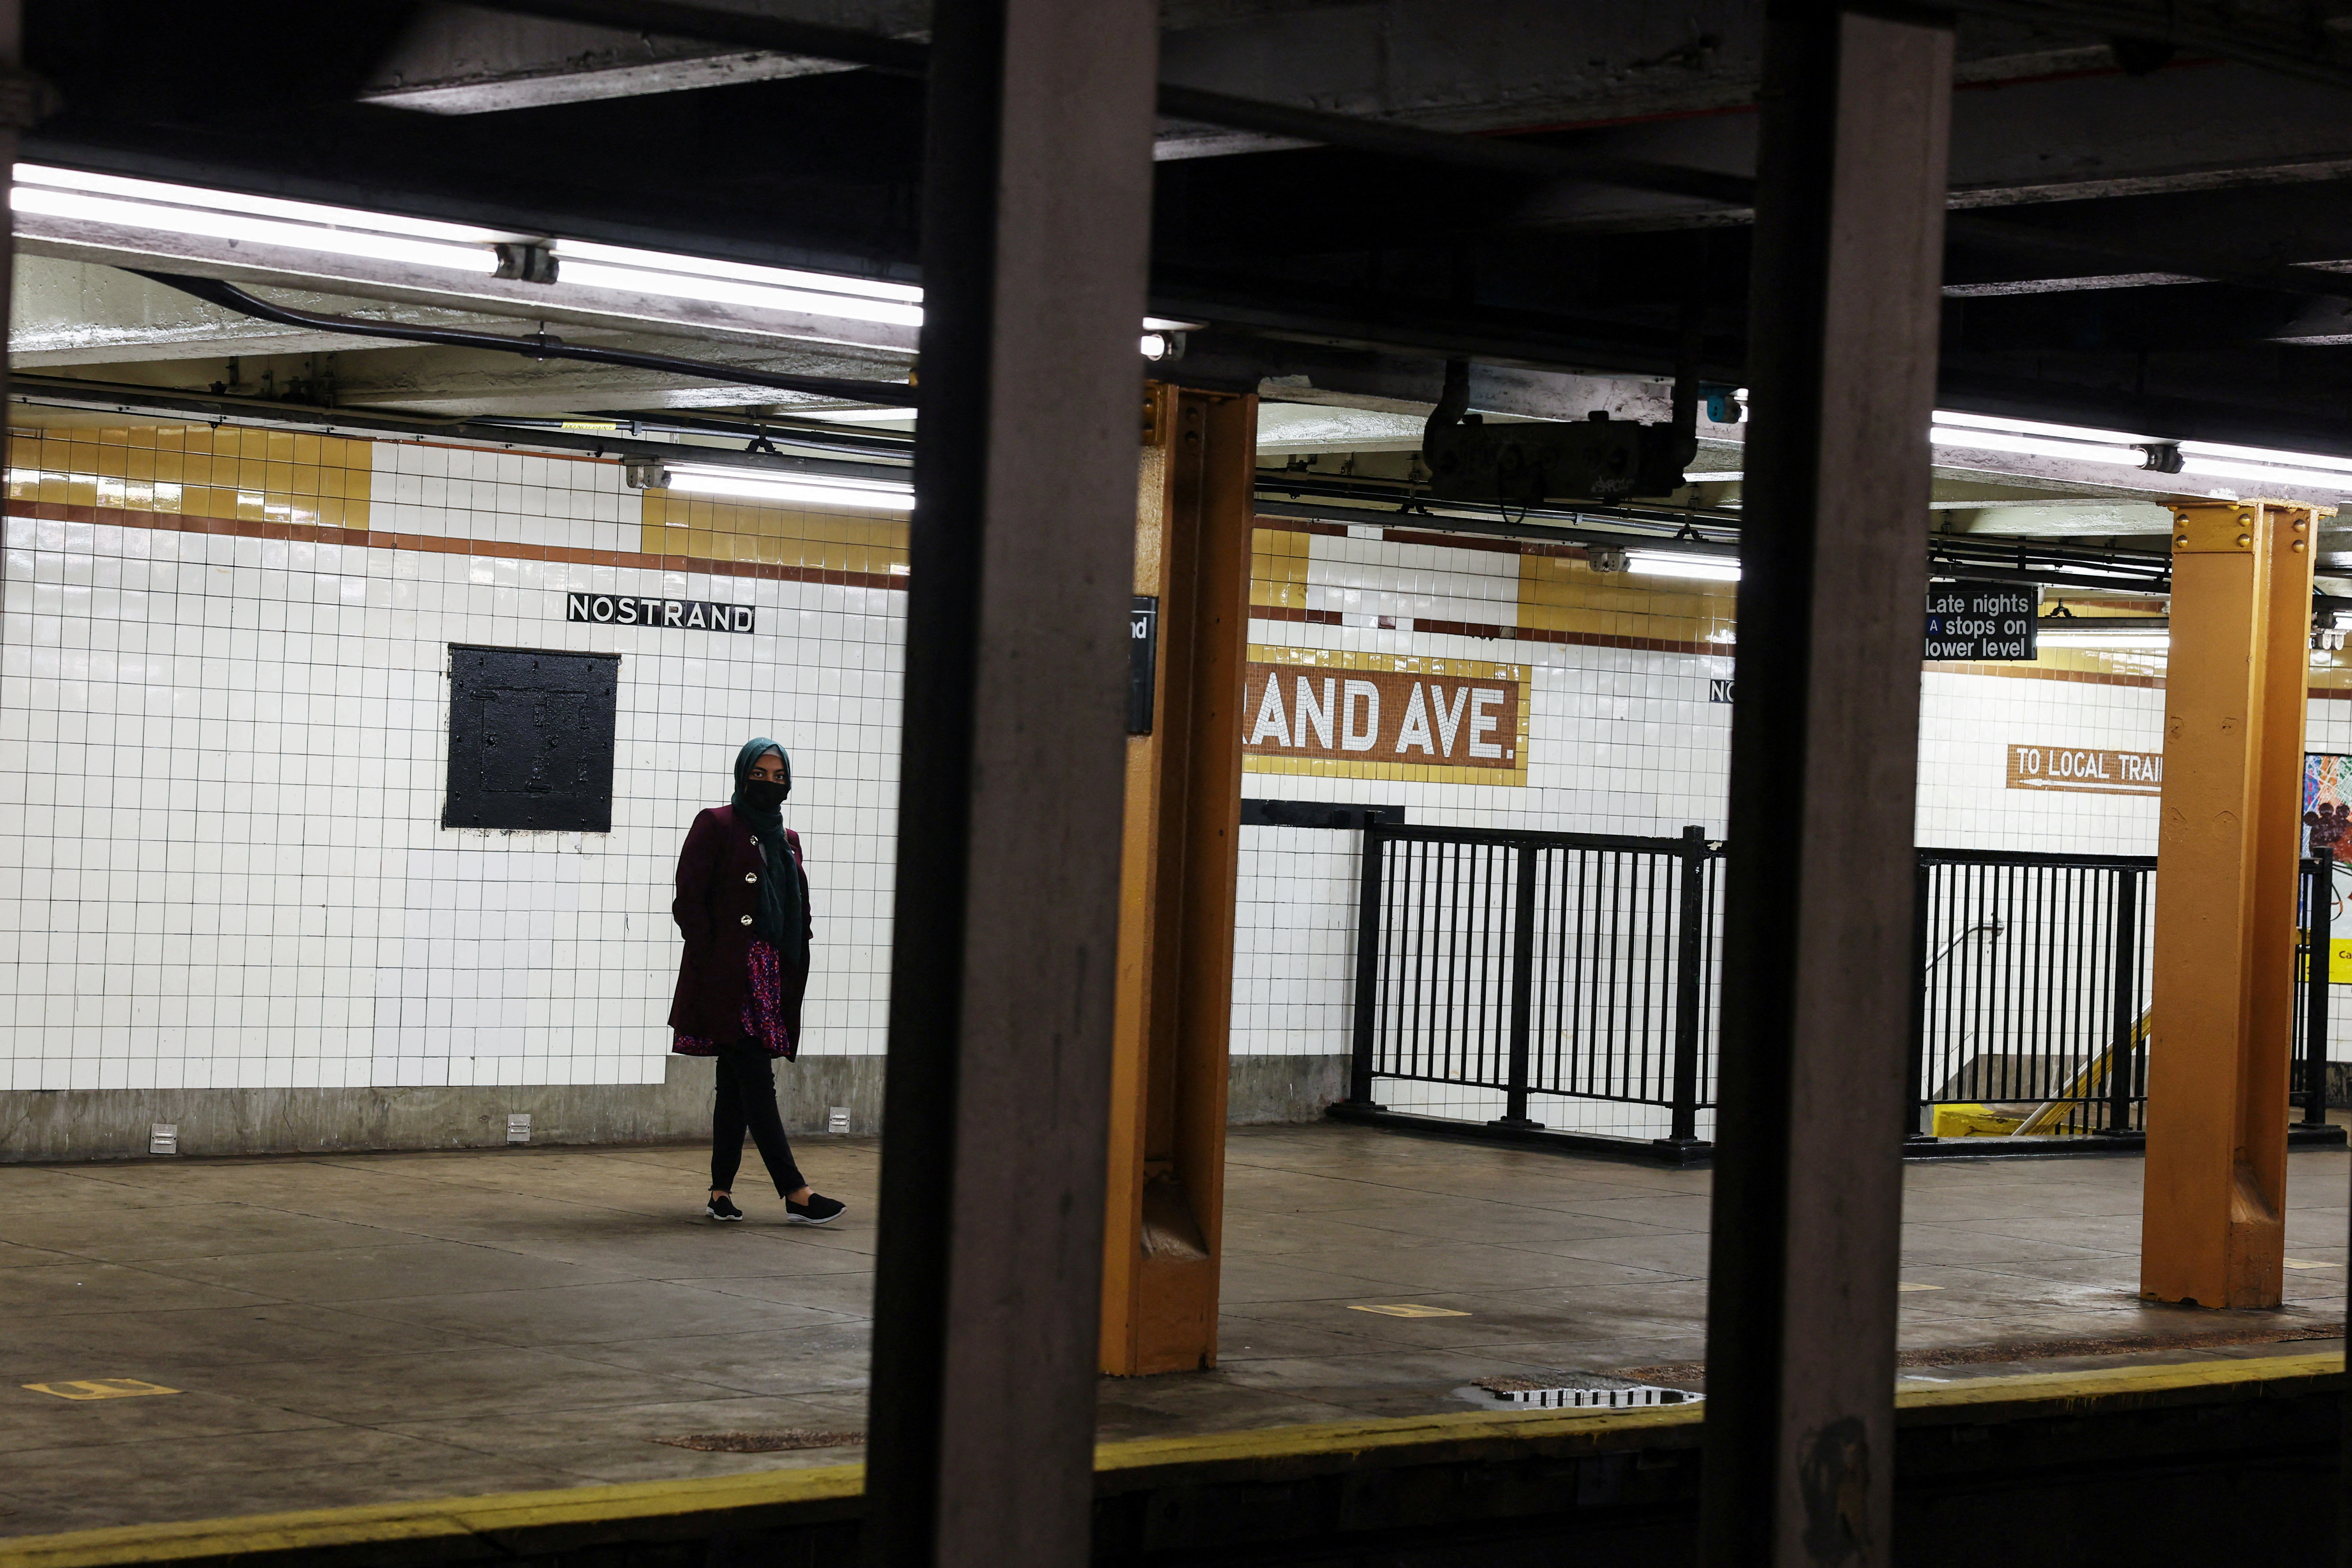 ニューヨーク市、地下鉄に携帯型銃検知システムを試験導入へ